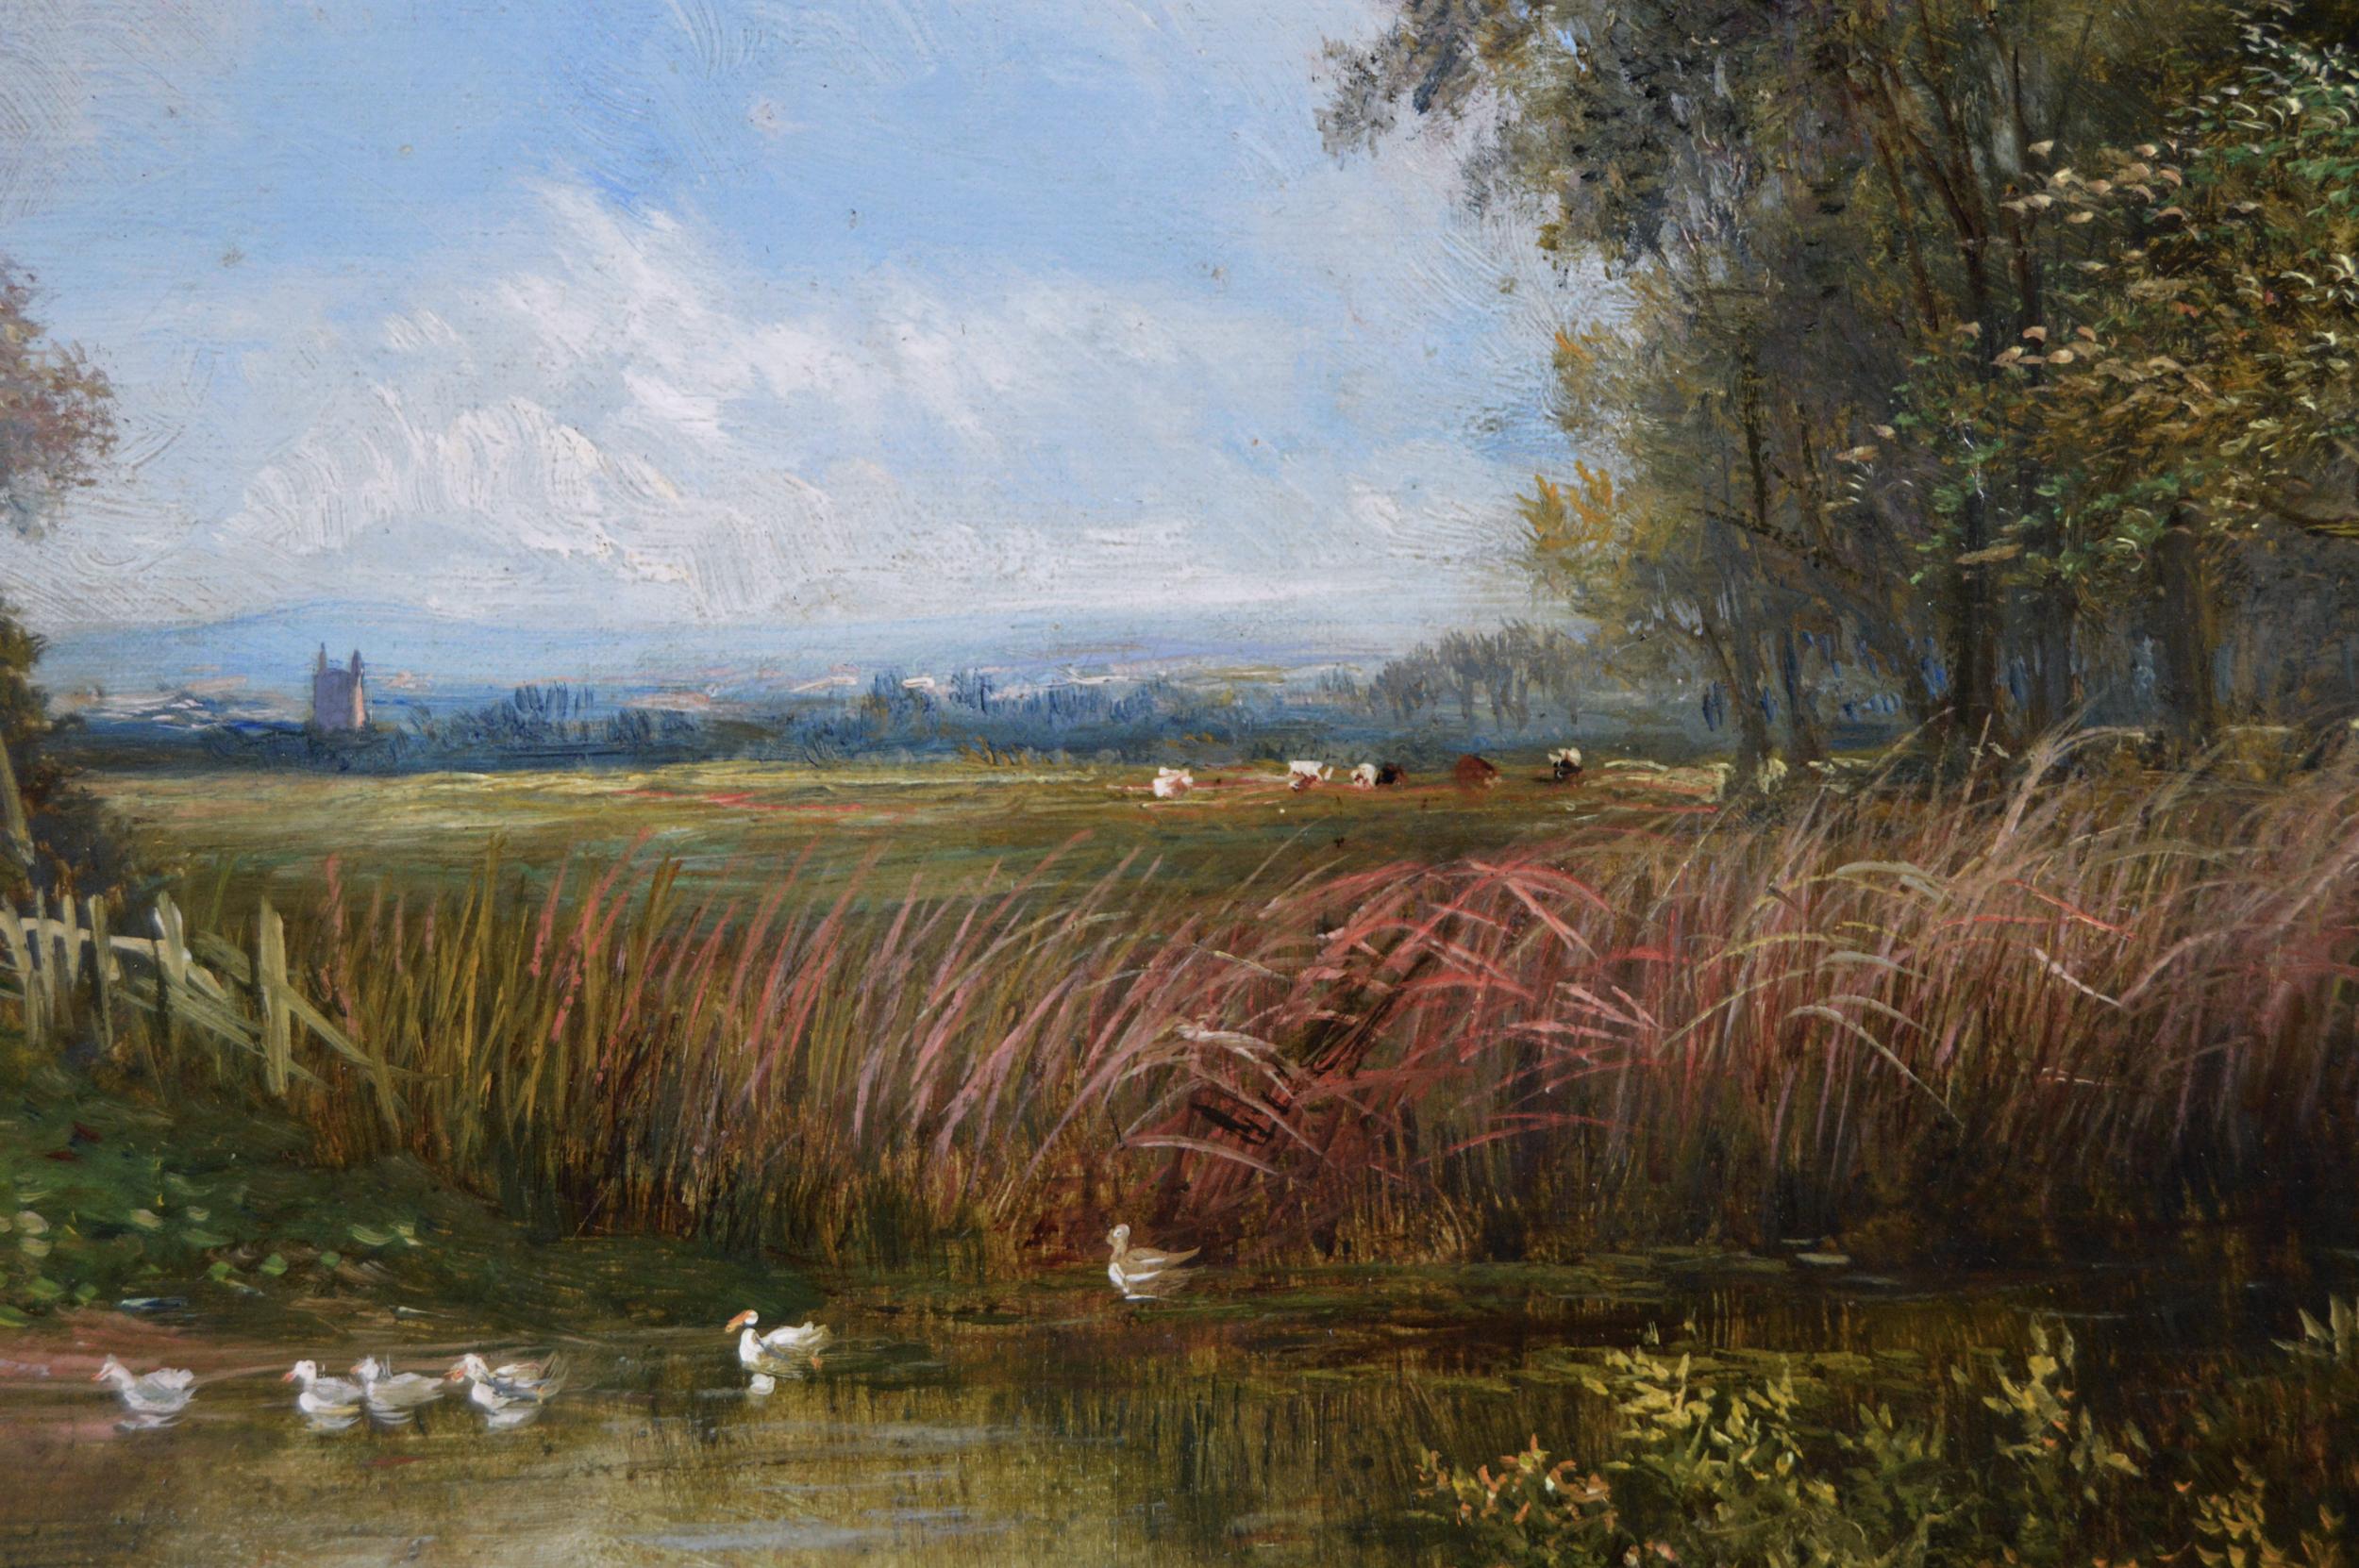 Joseph Thors
Britannique, (1835-1920)
Chalet au bord d'un étang à canards
Huile sur toile, signée
Taille de l'image : 15.5 pouces x 23.5 pouces 
Dimensions, y compris le cadre : 23,5 pouces x 31,5 pouces

Une jolie peinture de paysage d'un cottage